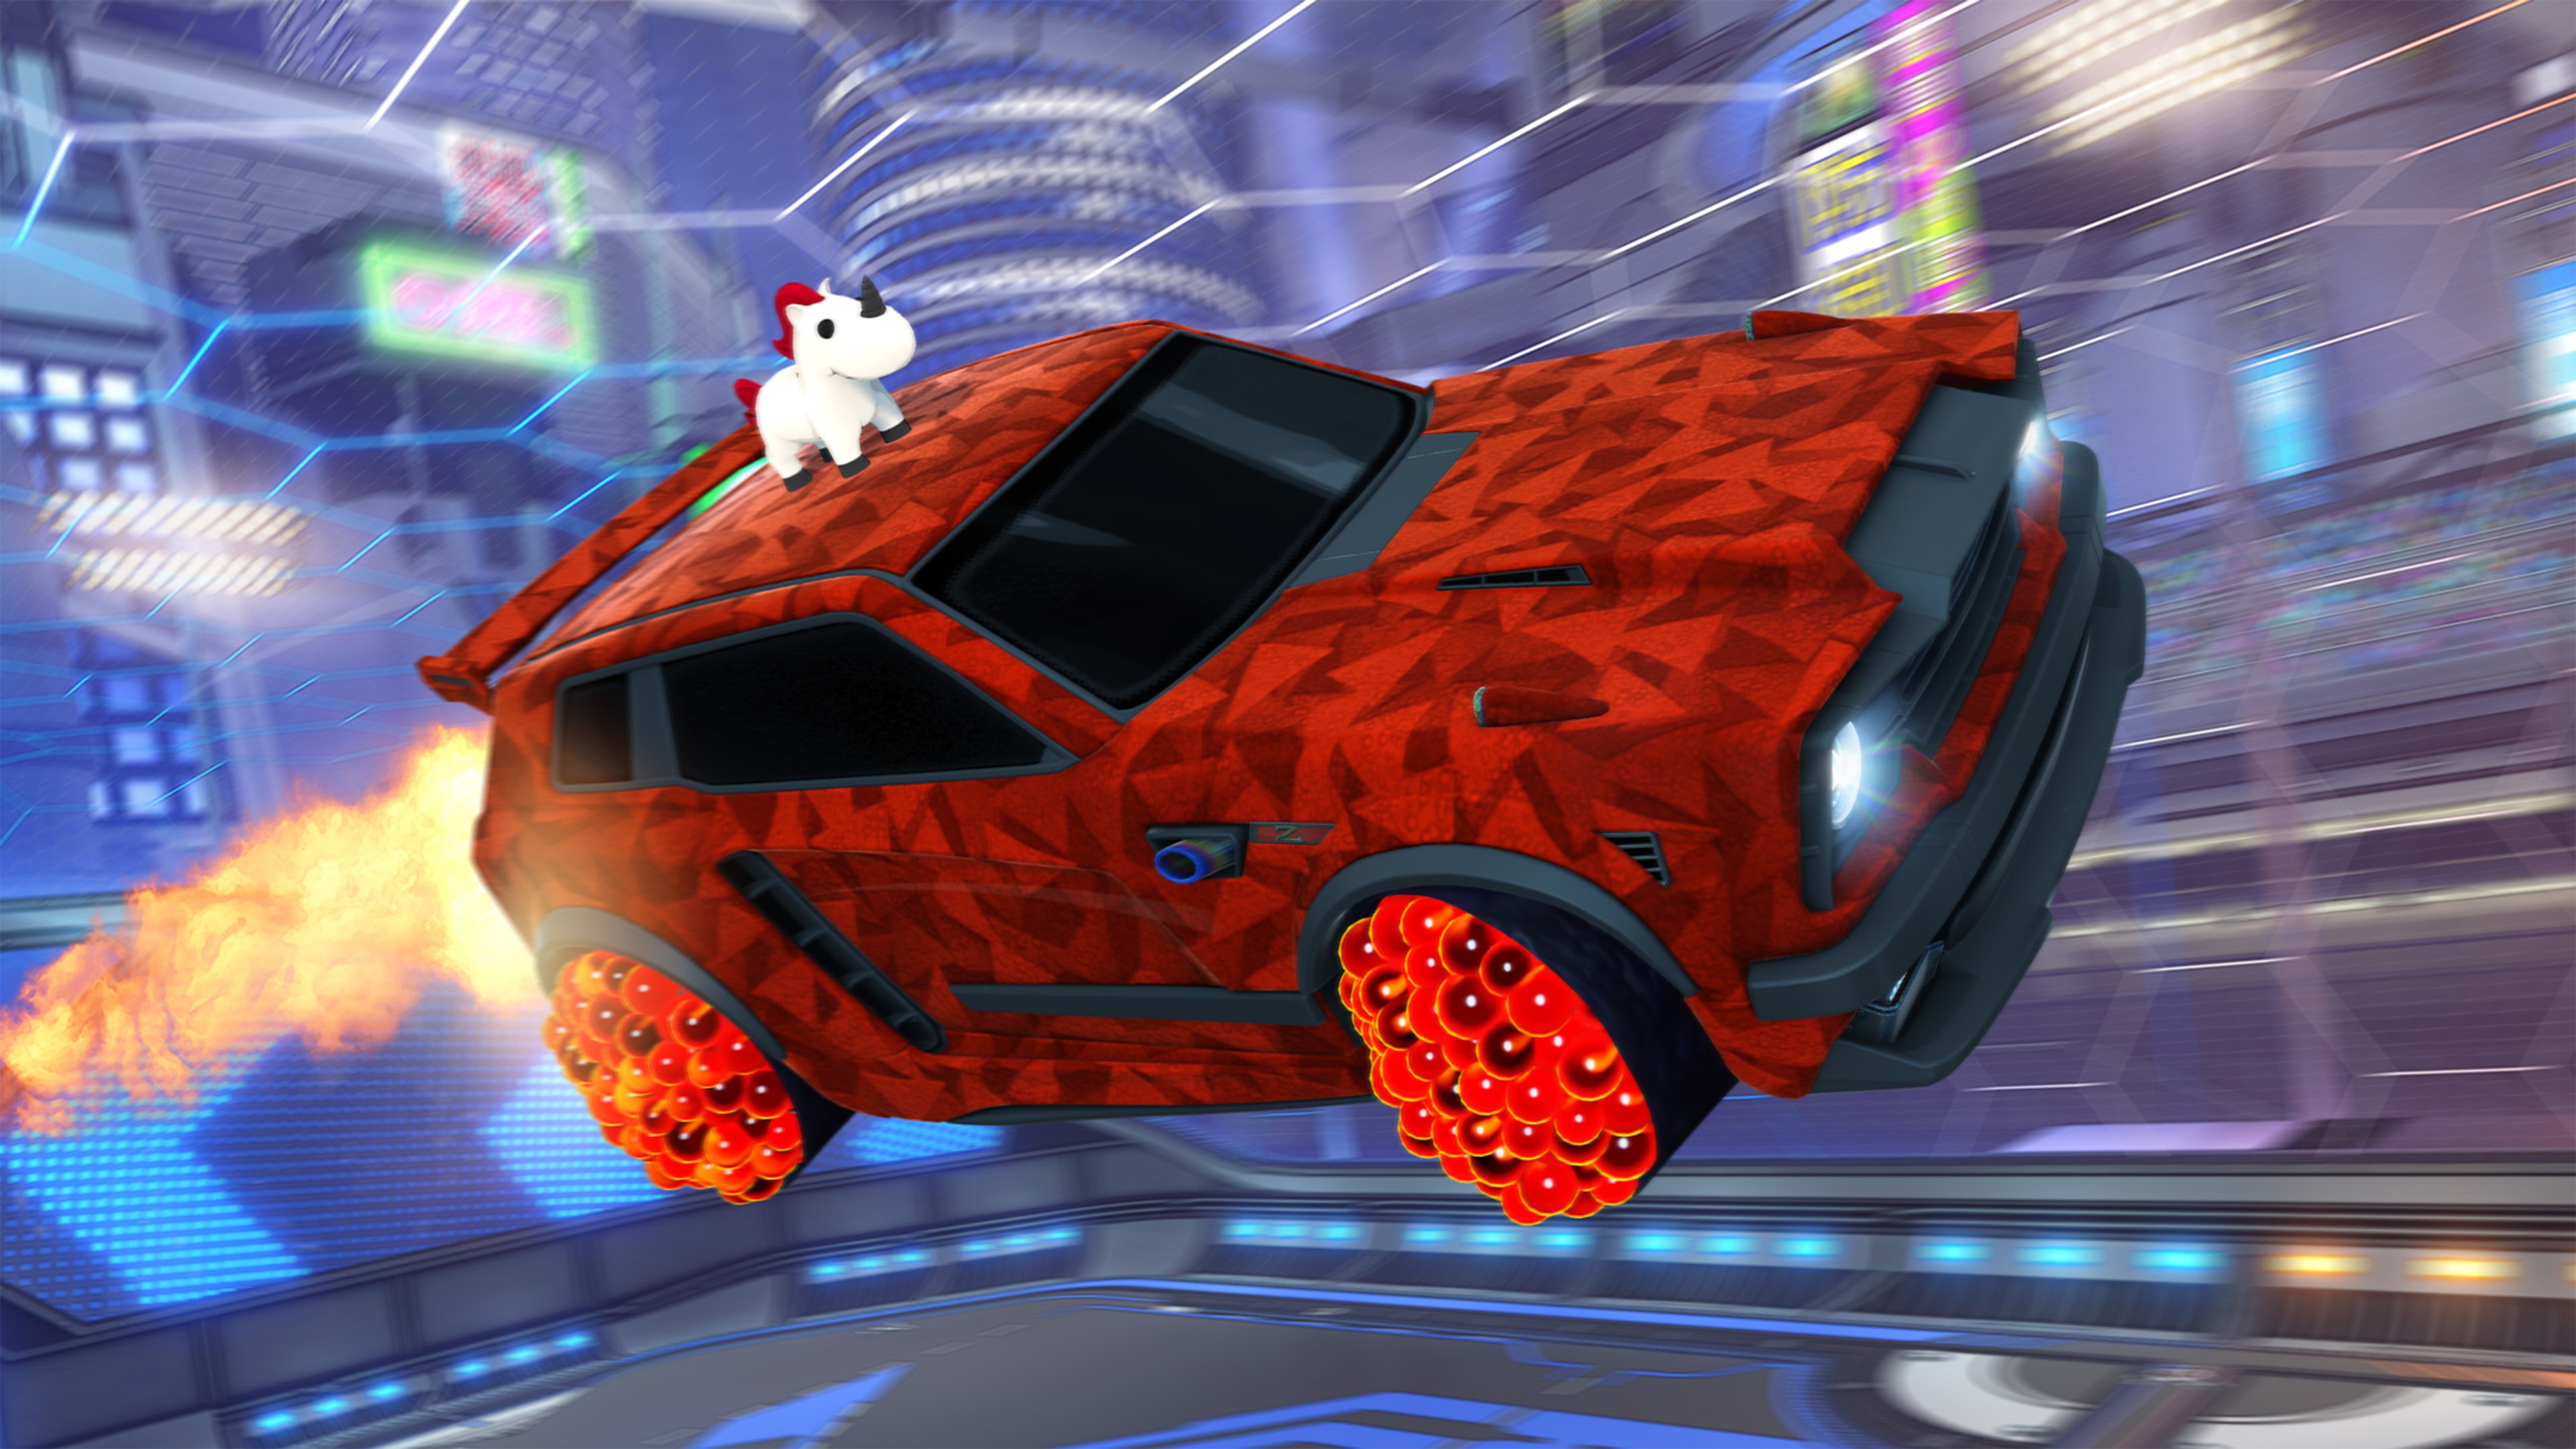 Rocket League – snímek obrazovky zachycující auto s jednorožci podobným zvířetem na střeše a lakem s červenými geometrickými tvary